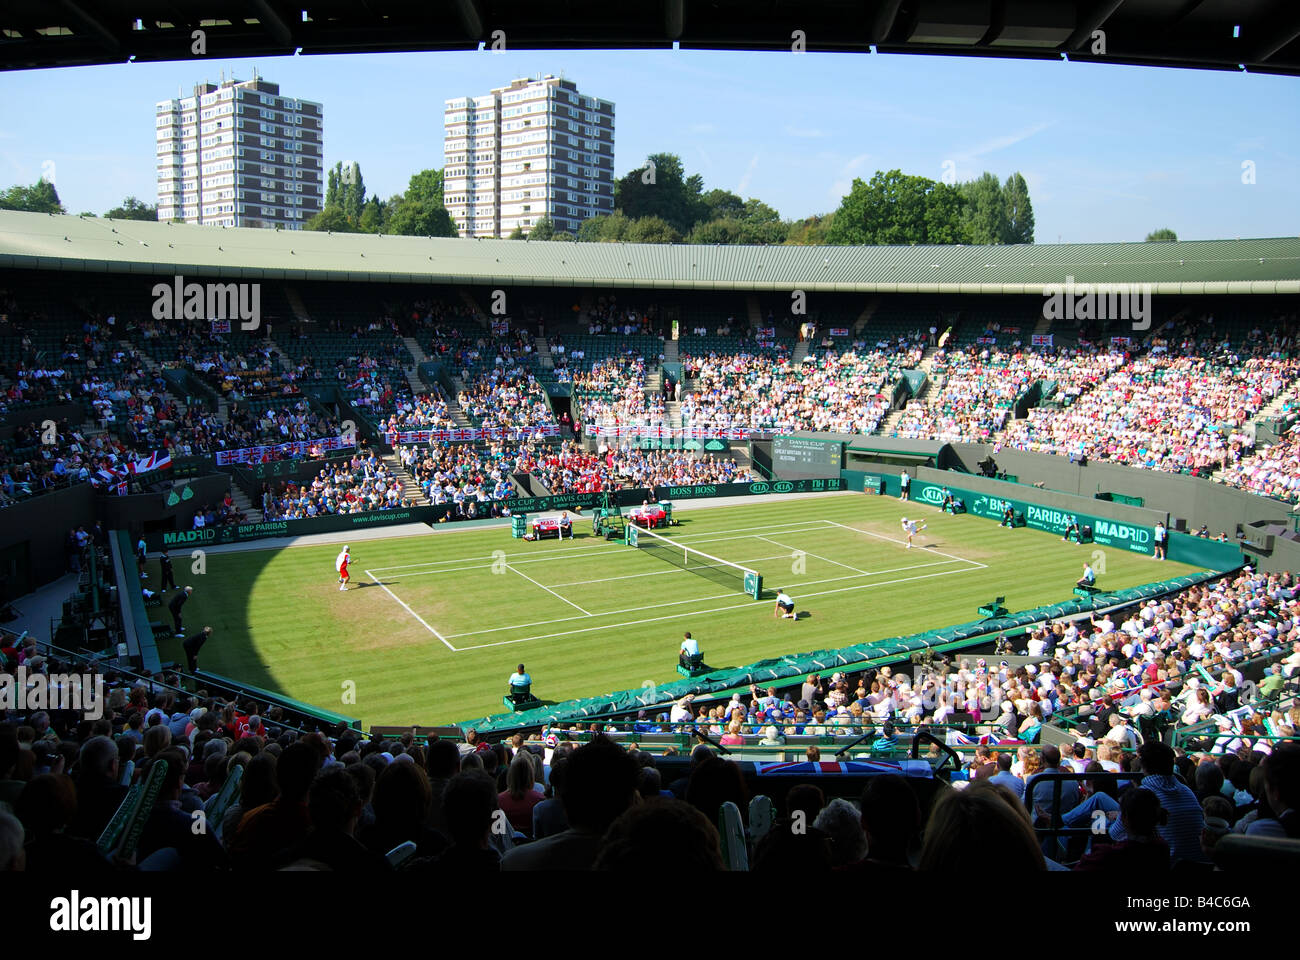 Match de la coupe Davis, Grande-Bretagne contre Autriche, court One, Wimbledon Lawn tennis Club, London Borough of Merton, Grand Londres, Angleterre, Royaume-Uni Banque D'Images